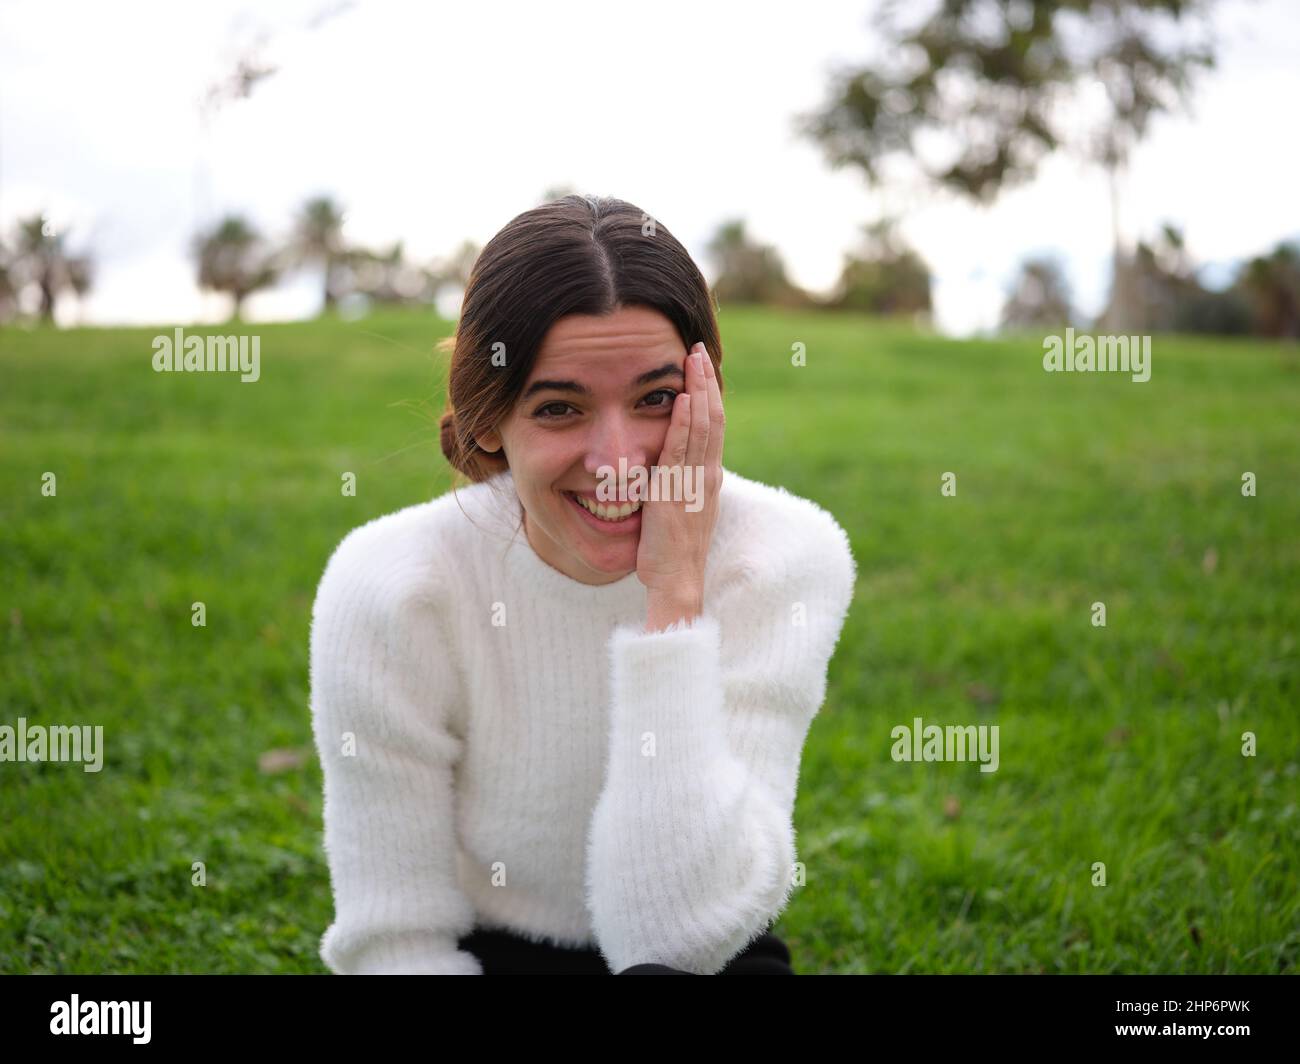 Eine glückliche junge Frau im Park, die die Kamera anschaut und ihr Gesicht mit der Hand berührt, während sie lacht. Stockfoto